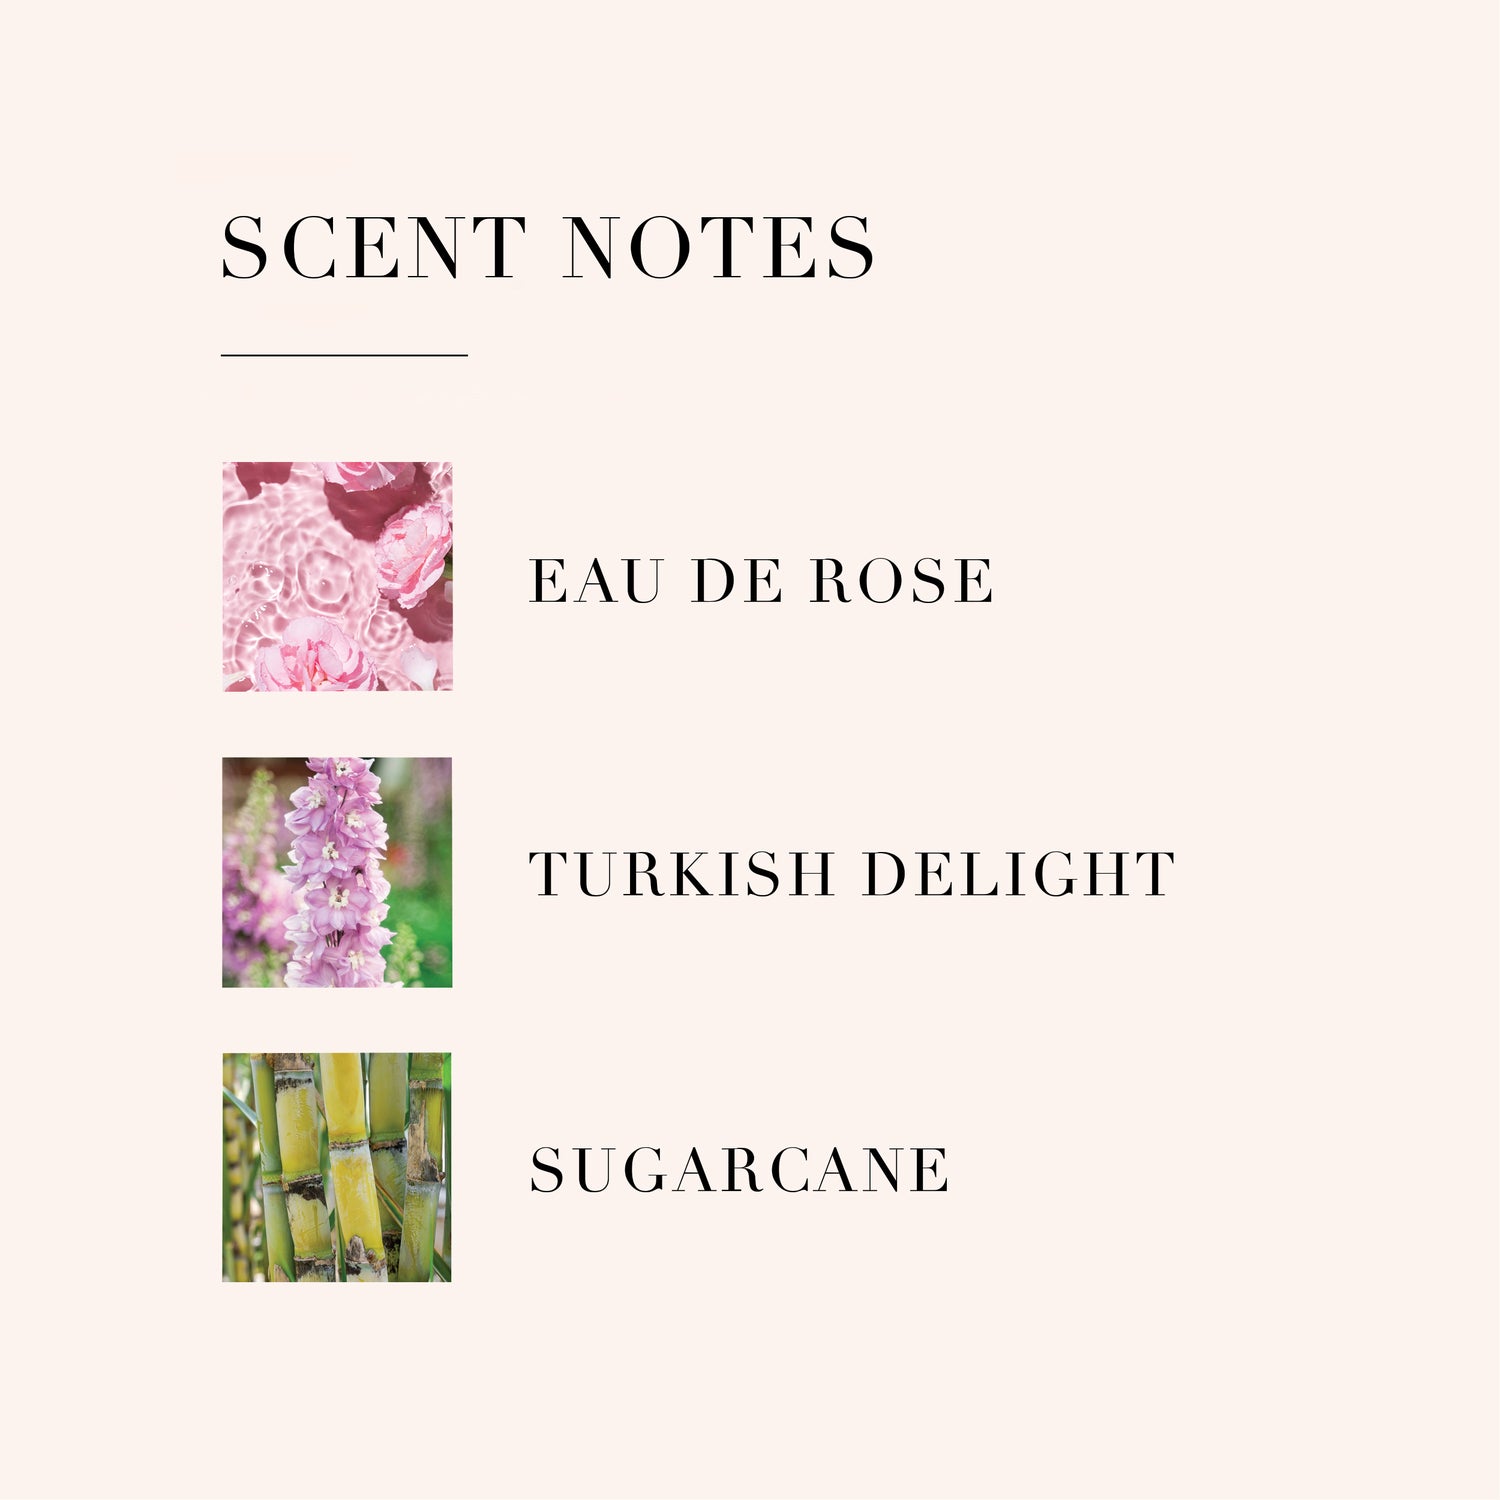 Sensarom - Colorant Alimentaire Liquide - Rose Rose - 1-2-Taste IN